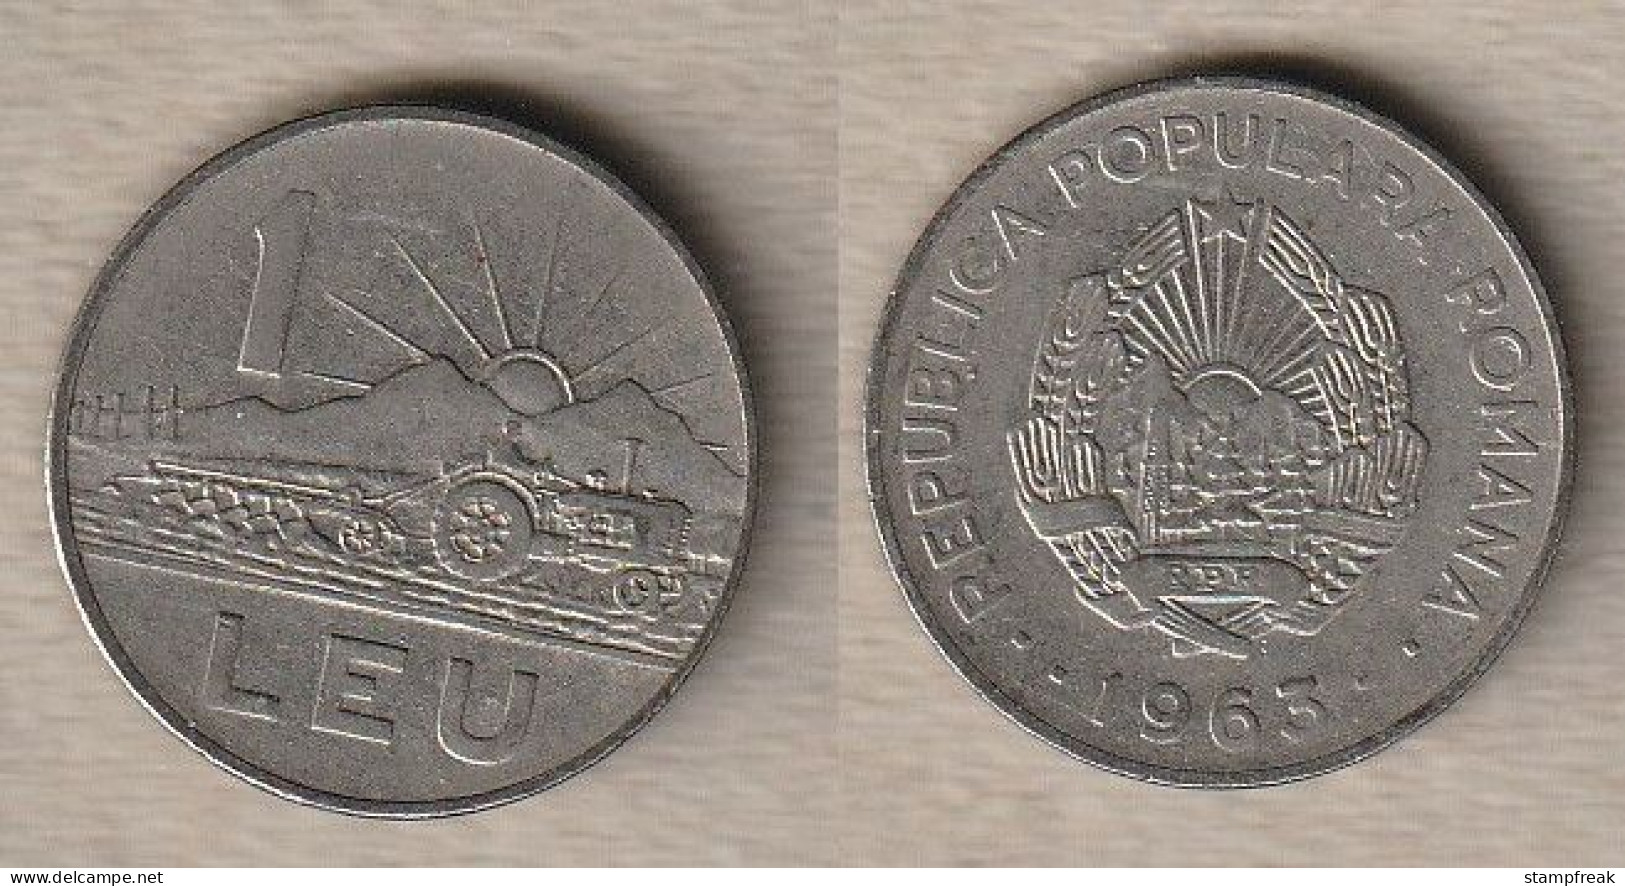 02457) Rumänien, 1 Leu 1963 - Rumänien